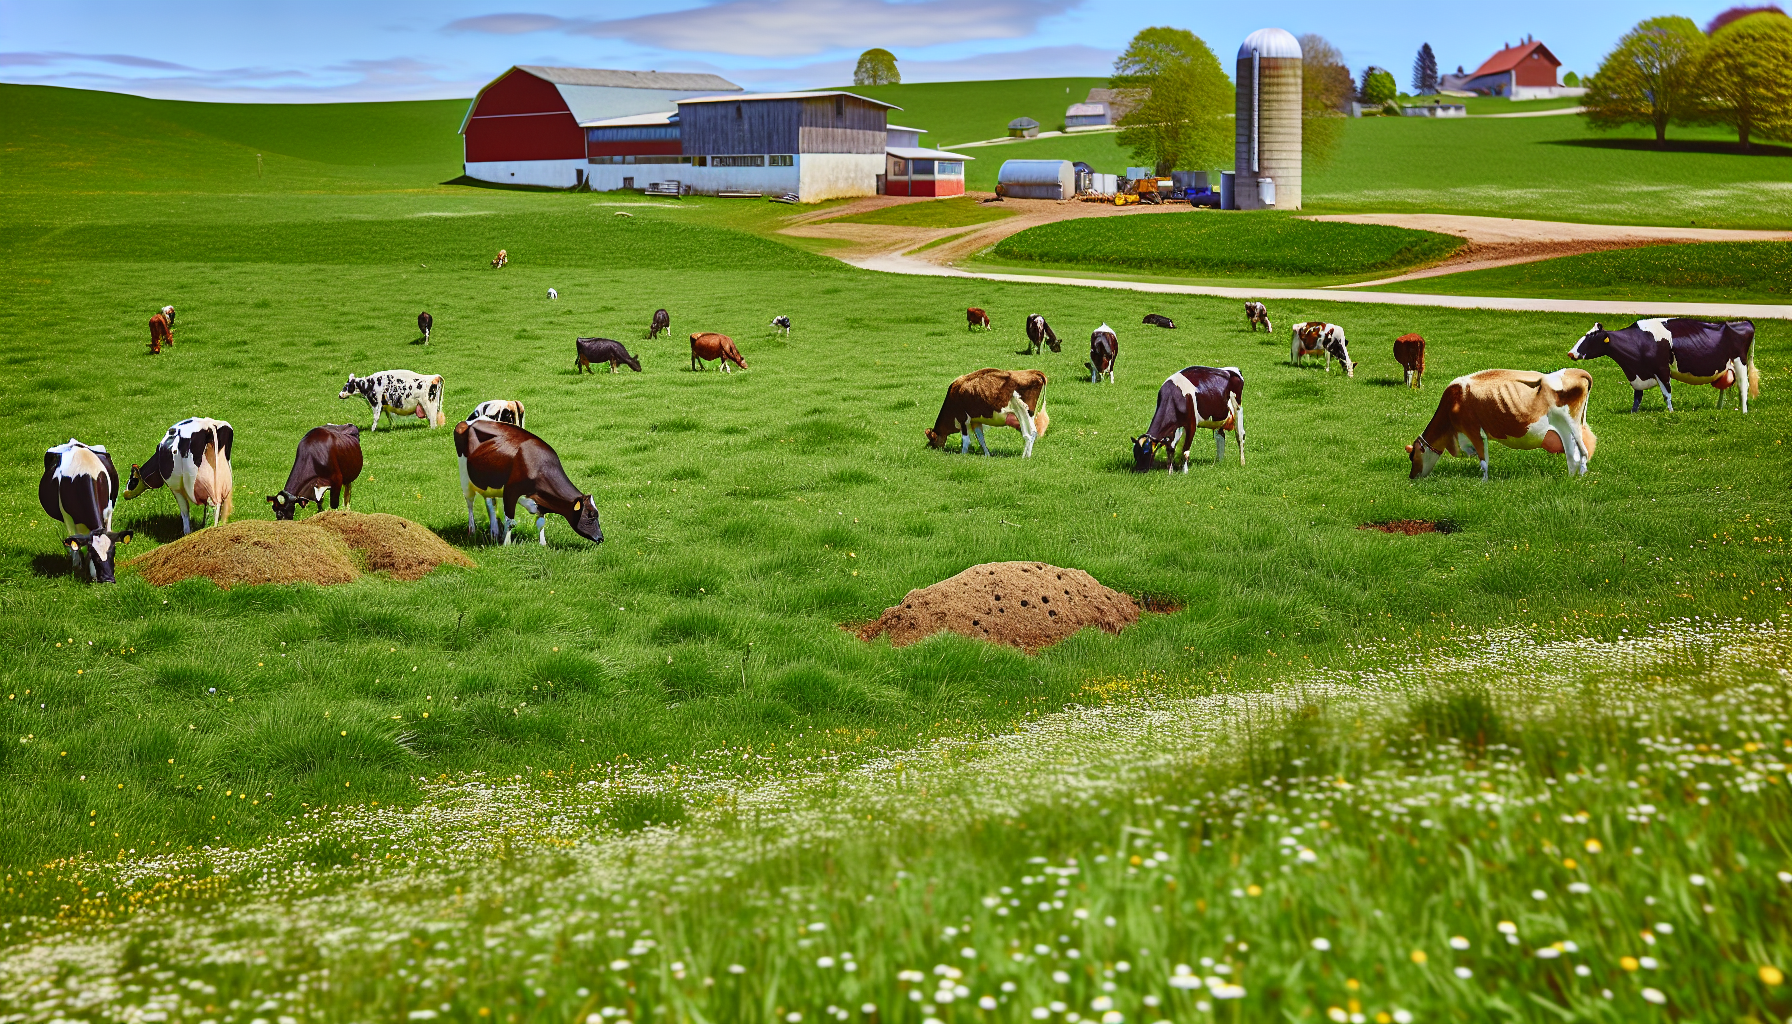 Vacas en un ambiente rural